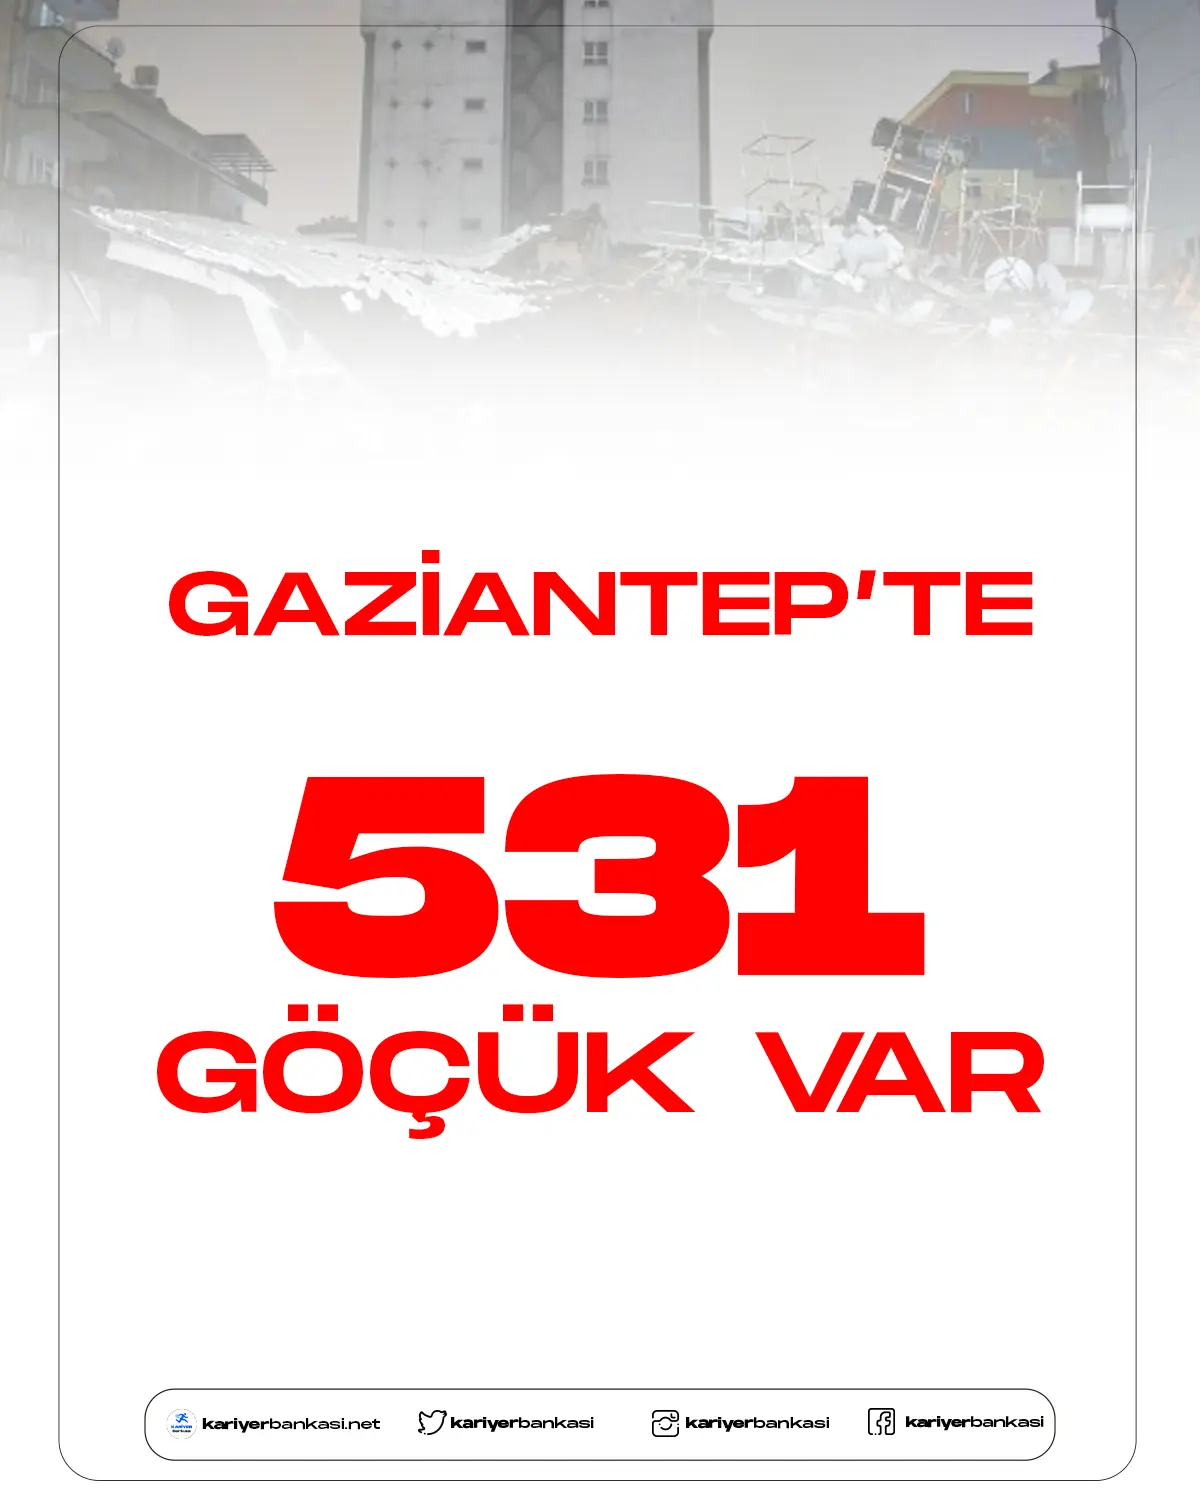 Gaziantep'te deprem sonrası 531 göçük var.